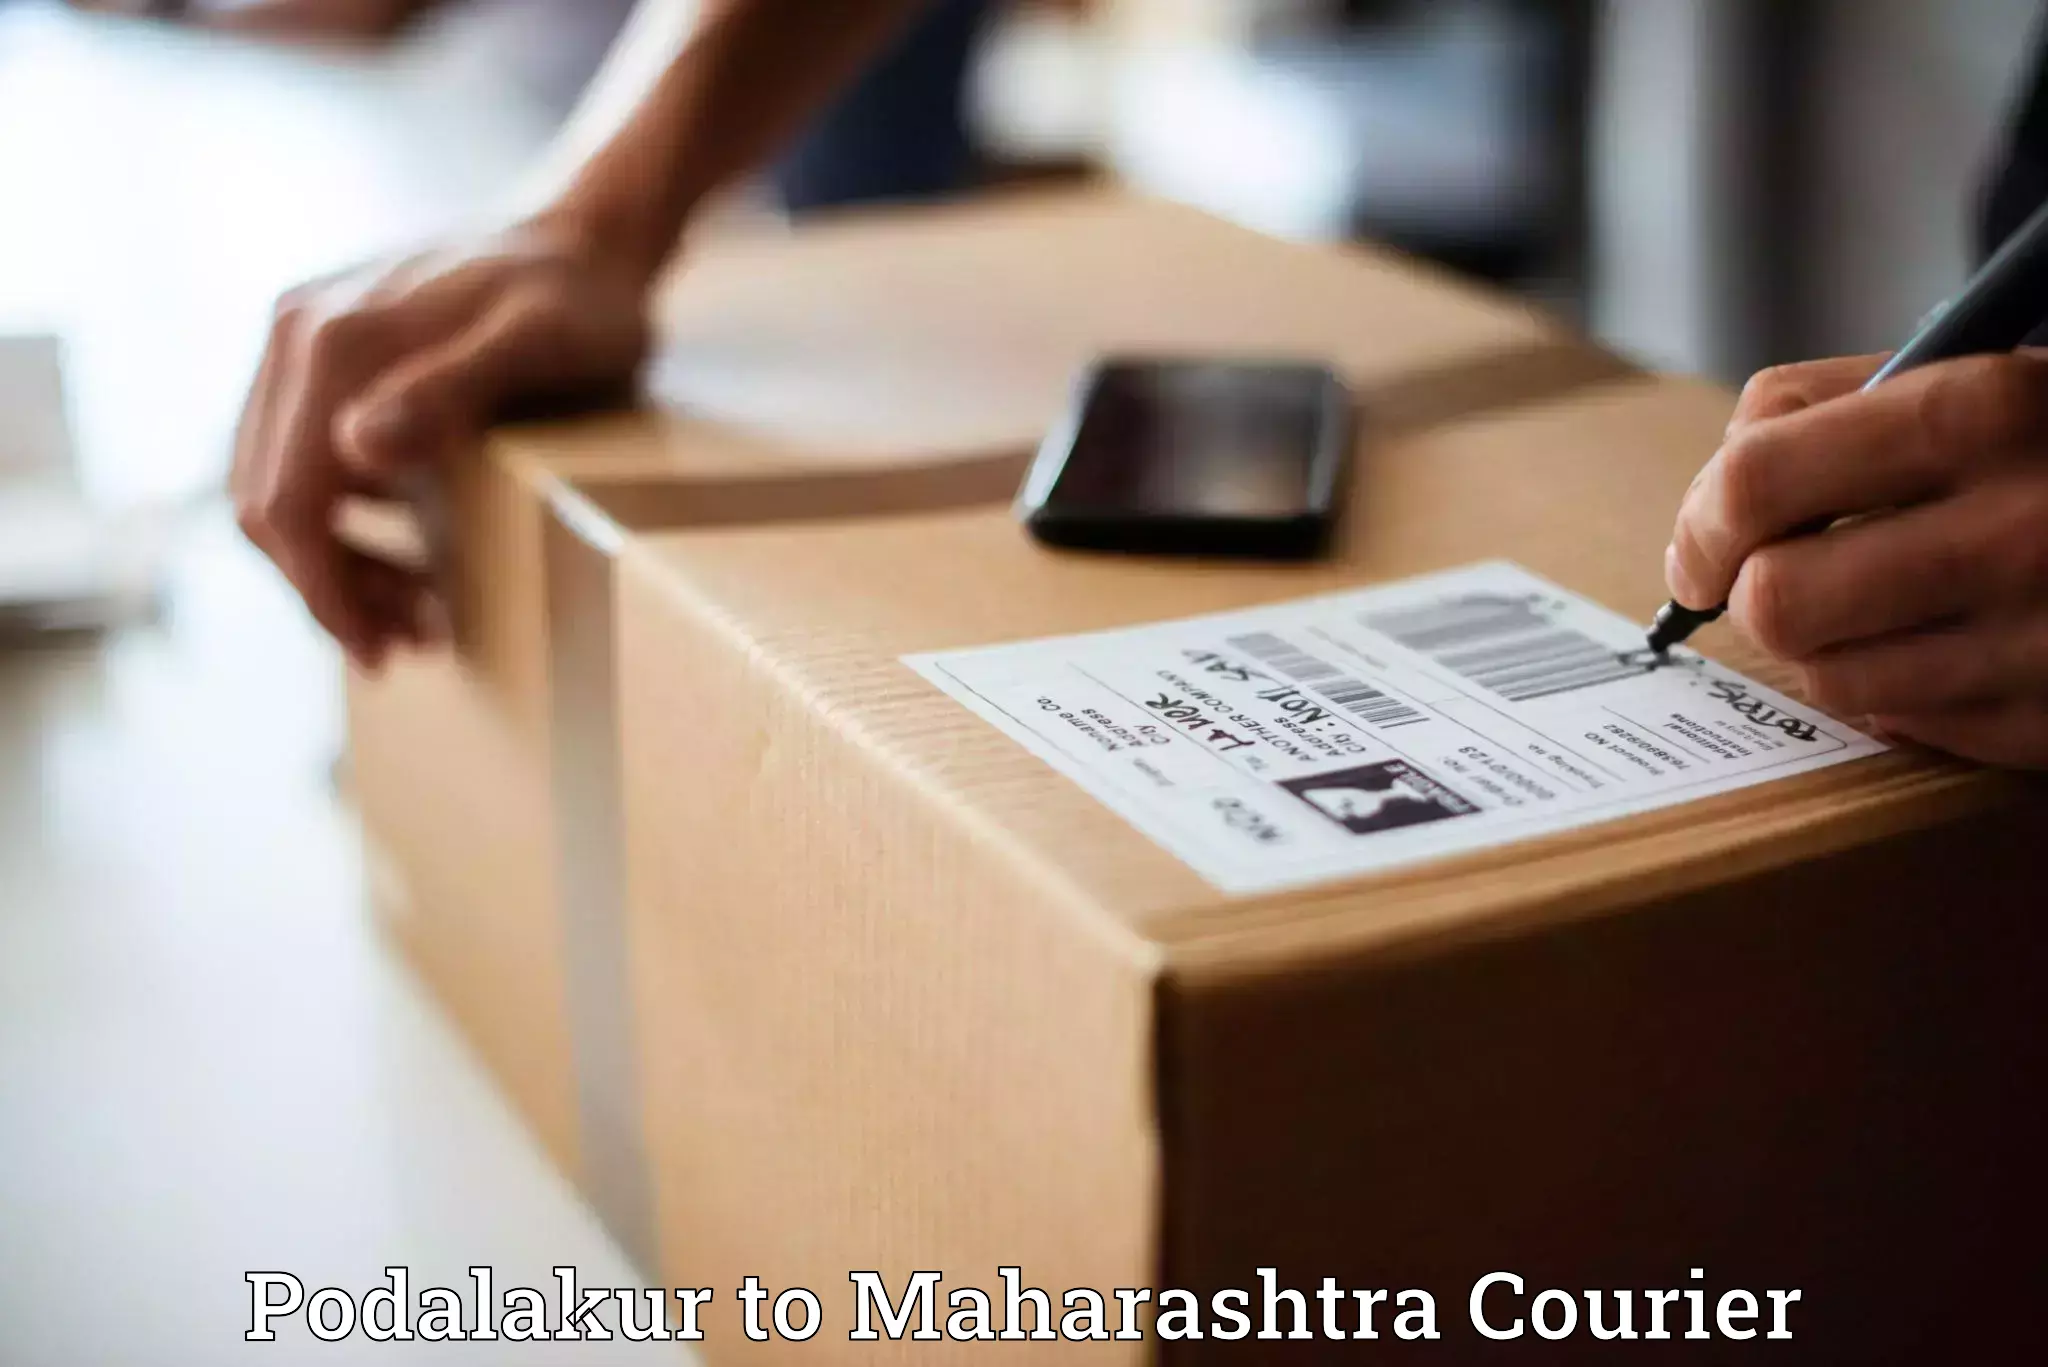 Tech-enabled shipping Podalakur to Mahagaon